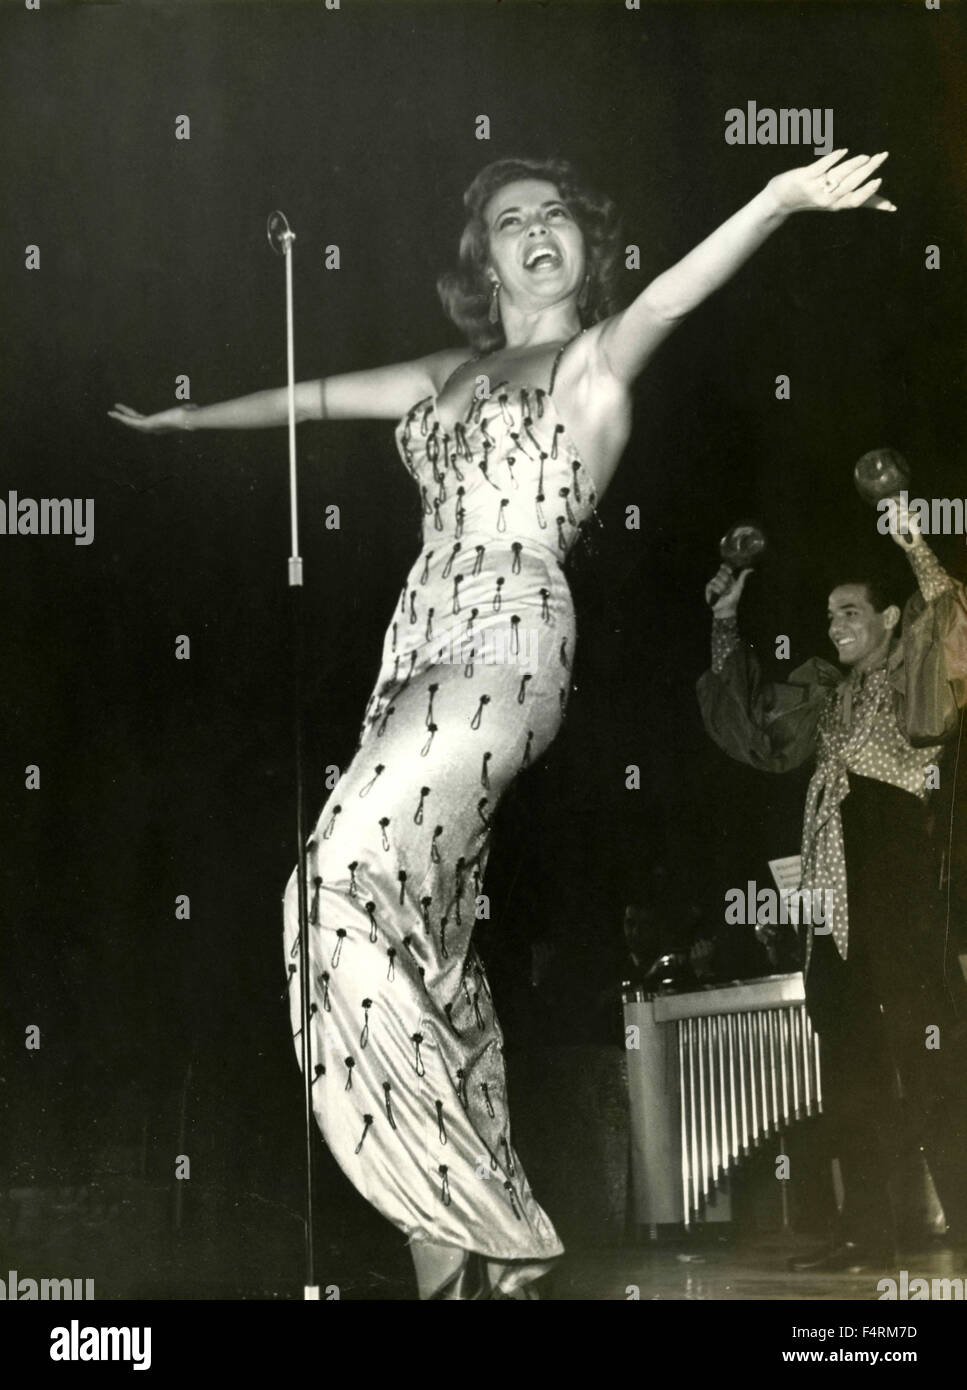 Actriz norteamericana Abbe Lane canta en el escenario, Italia Foto de stock